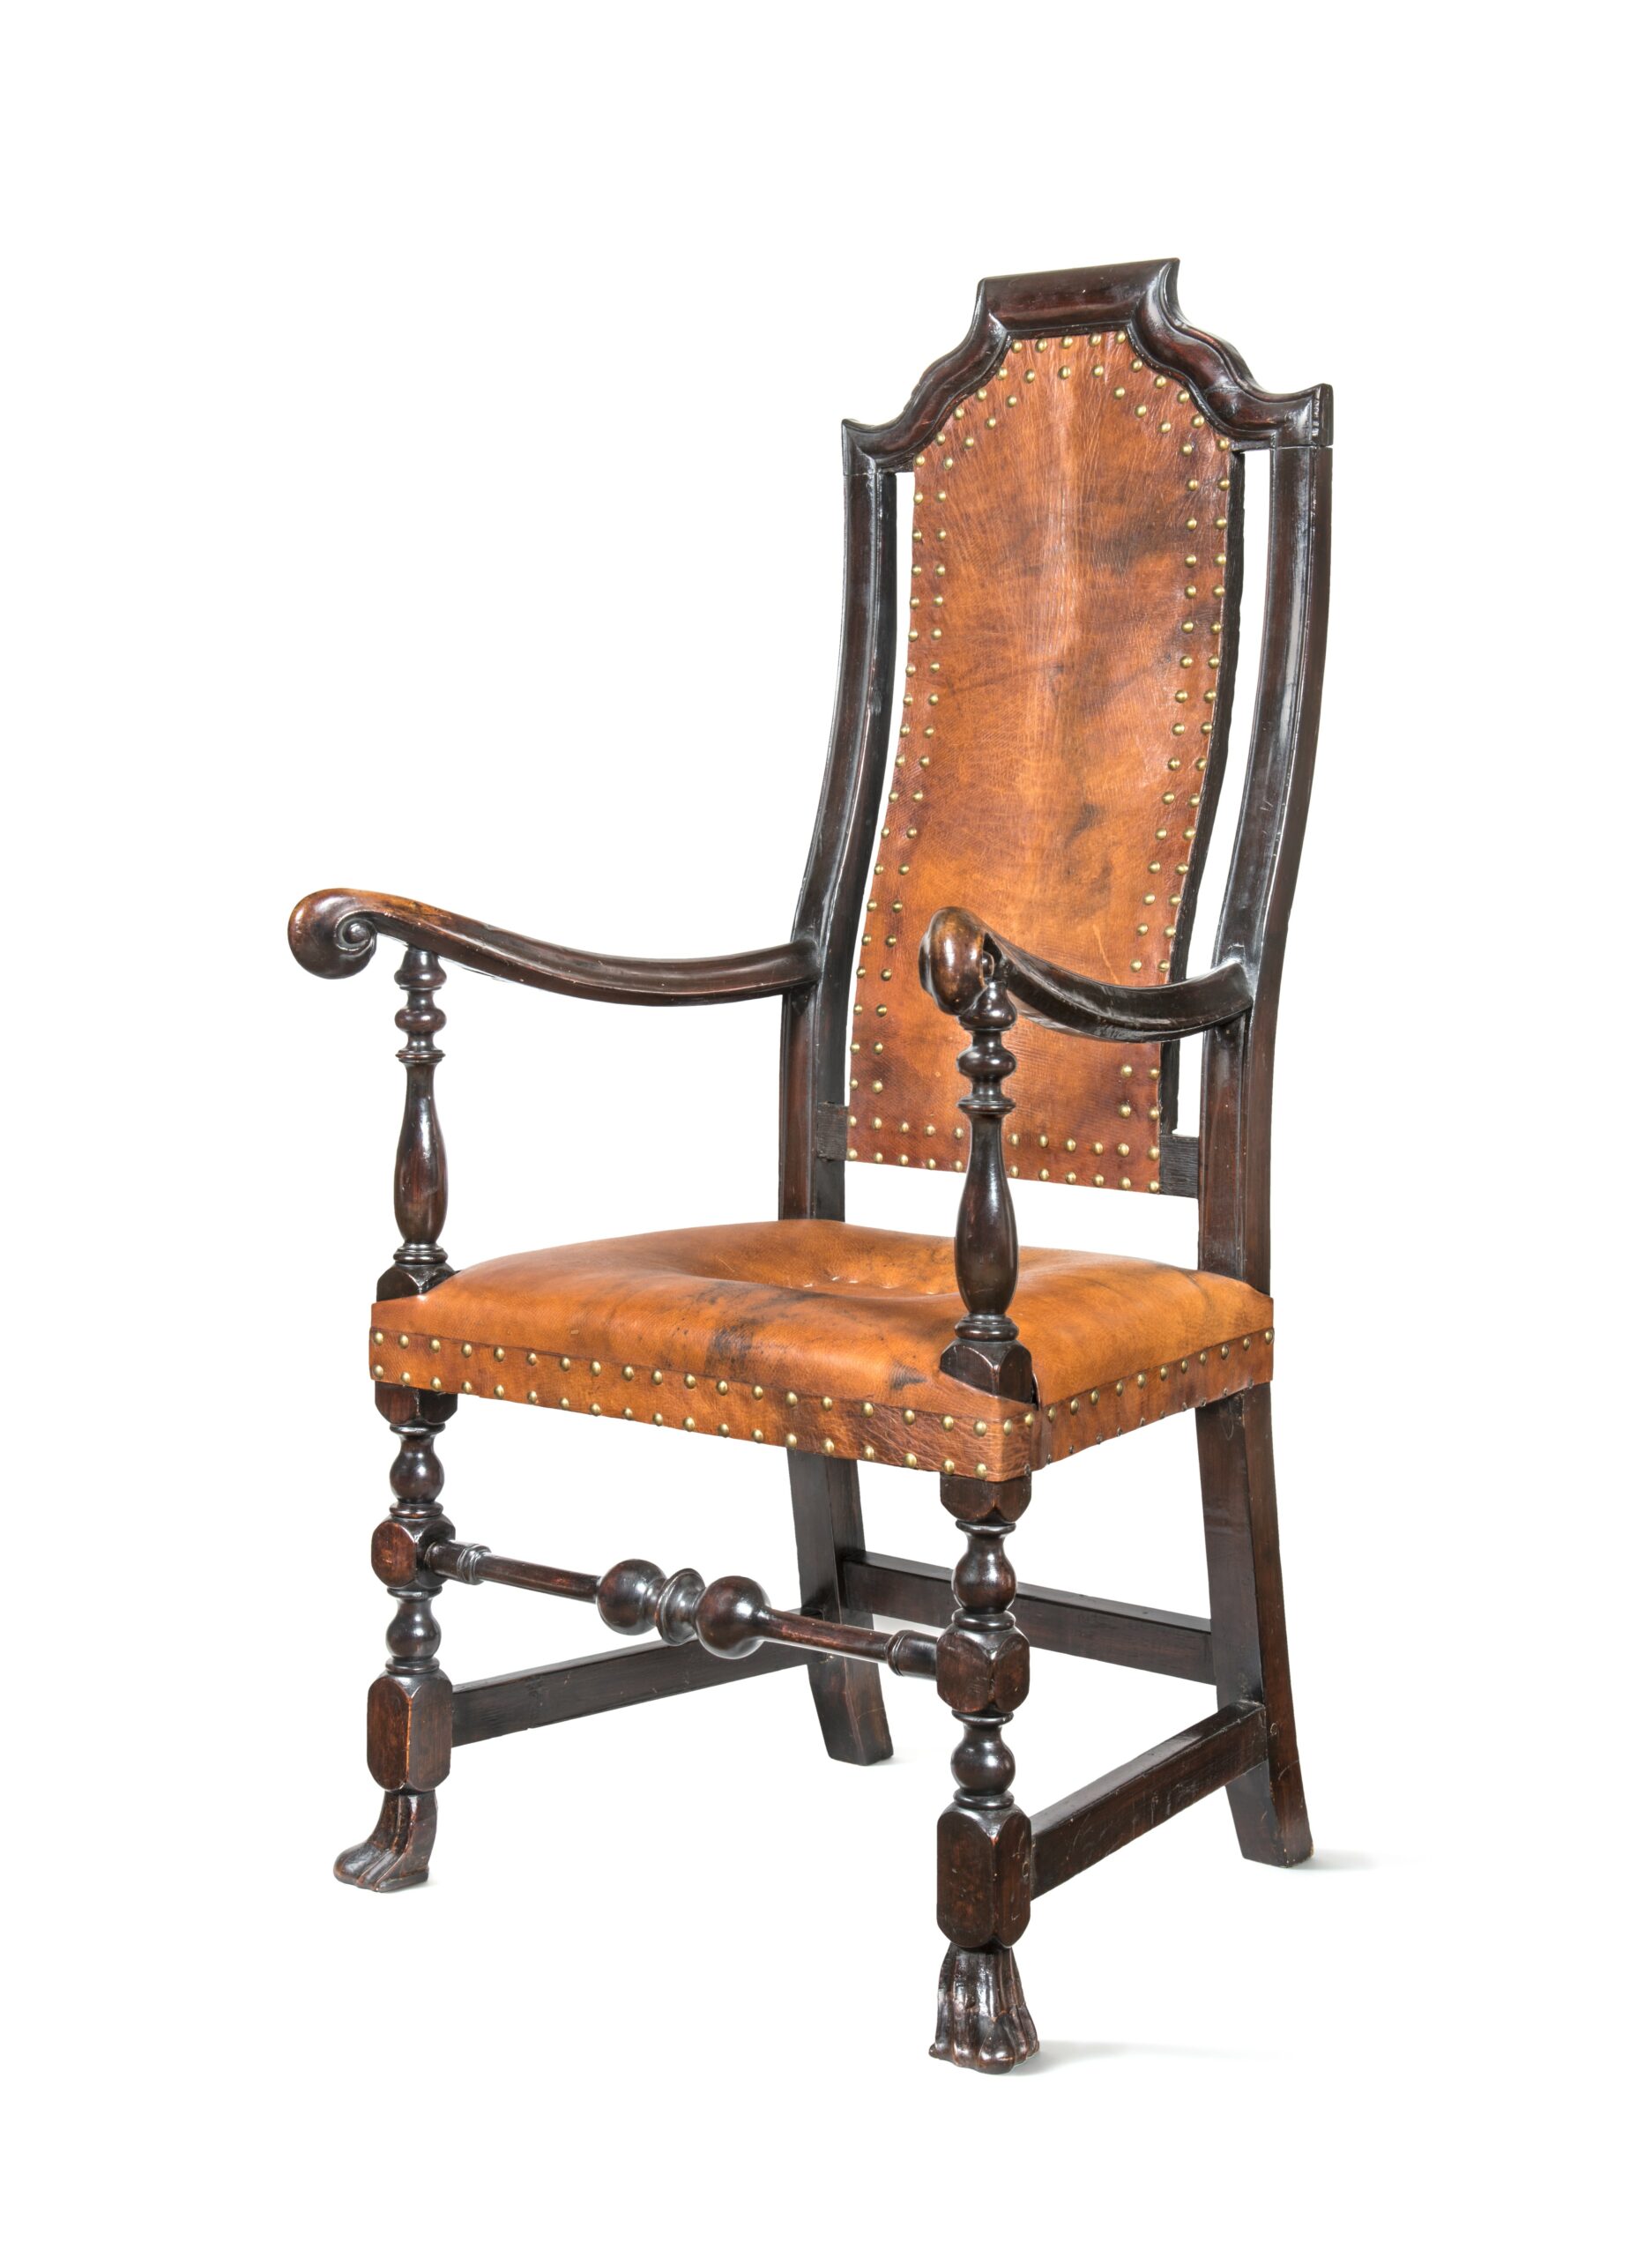 Certains musées vont faire de même et profiter de cet afflux inattendu de cuir de Russie pour restaurer certaines pièces de leur collection comme c’est le cas avec cette chaise du Winterthur Museum. (Source : Winterthur Museum)
